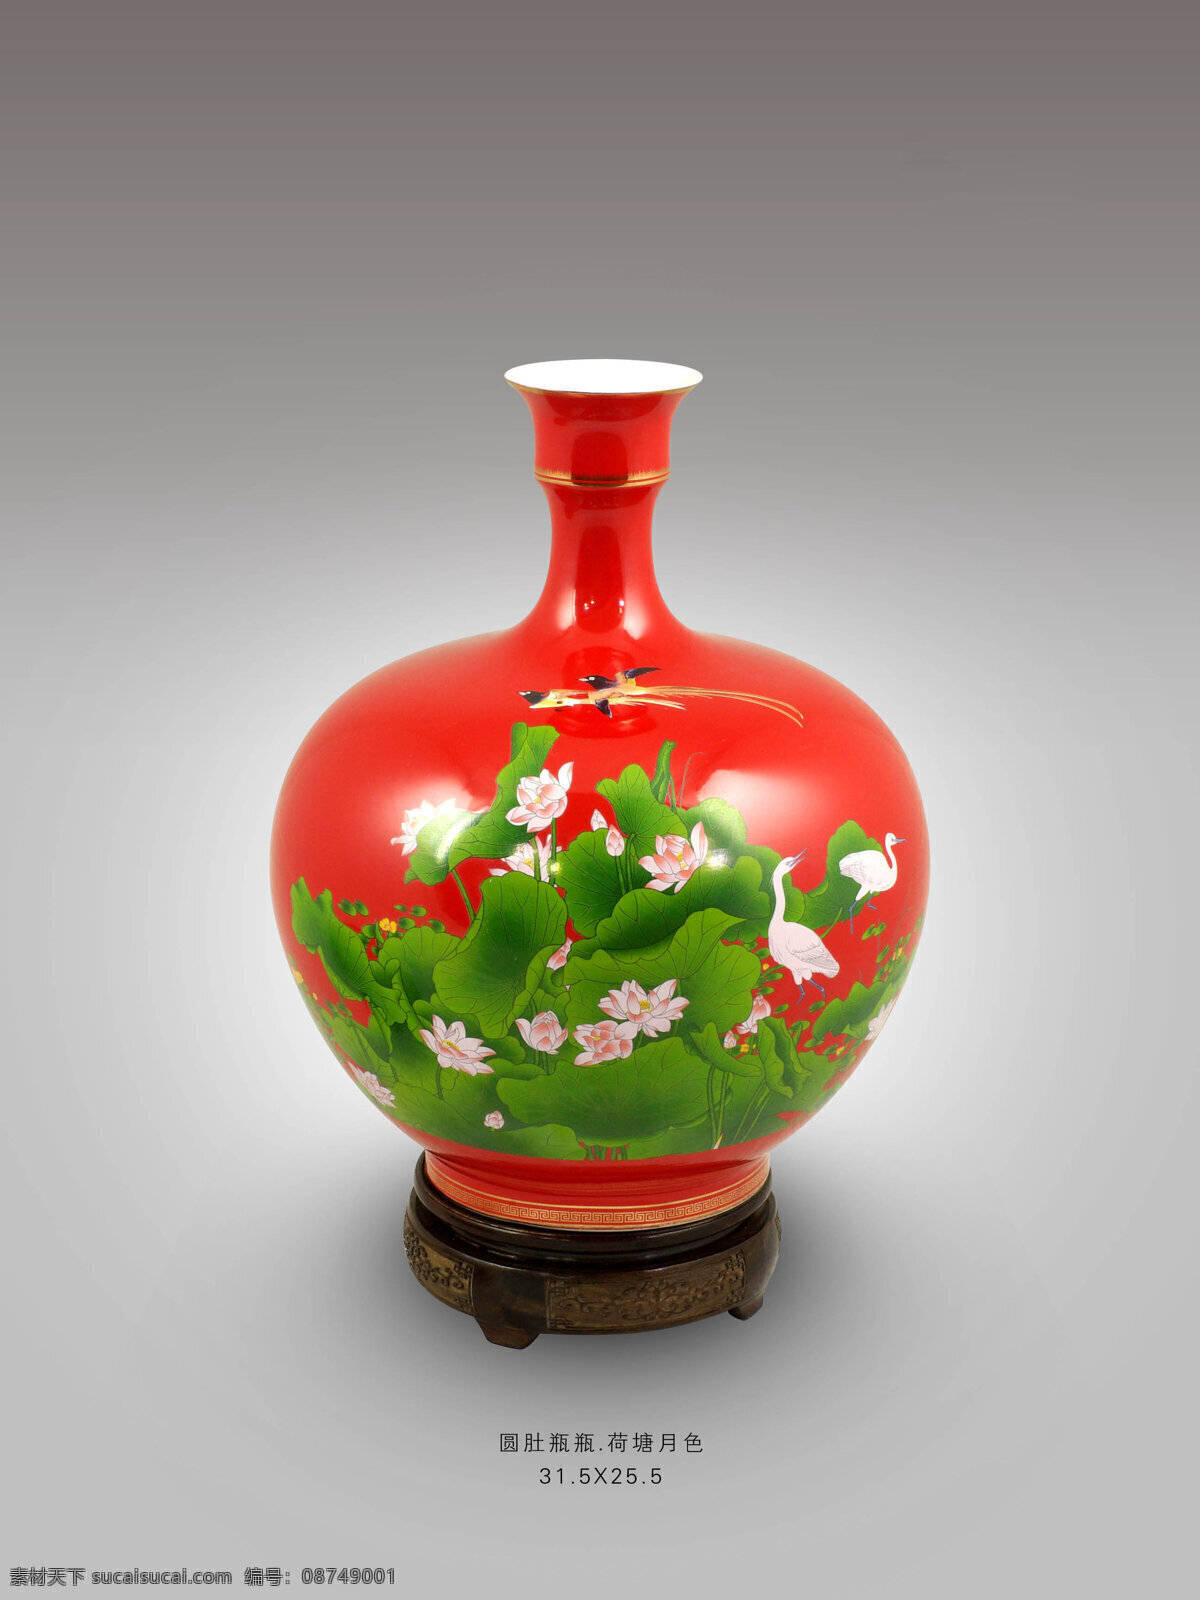 红瓷花瓶 圆肚瓶 红瓷 花瓶 礼品 定制 厂家 湖南醴陵 祥龙窑 文化艺术